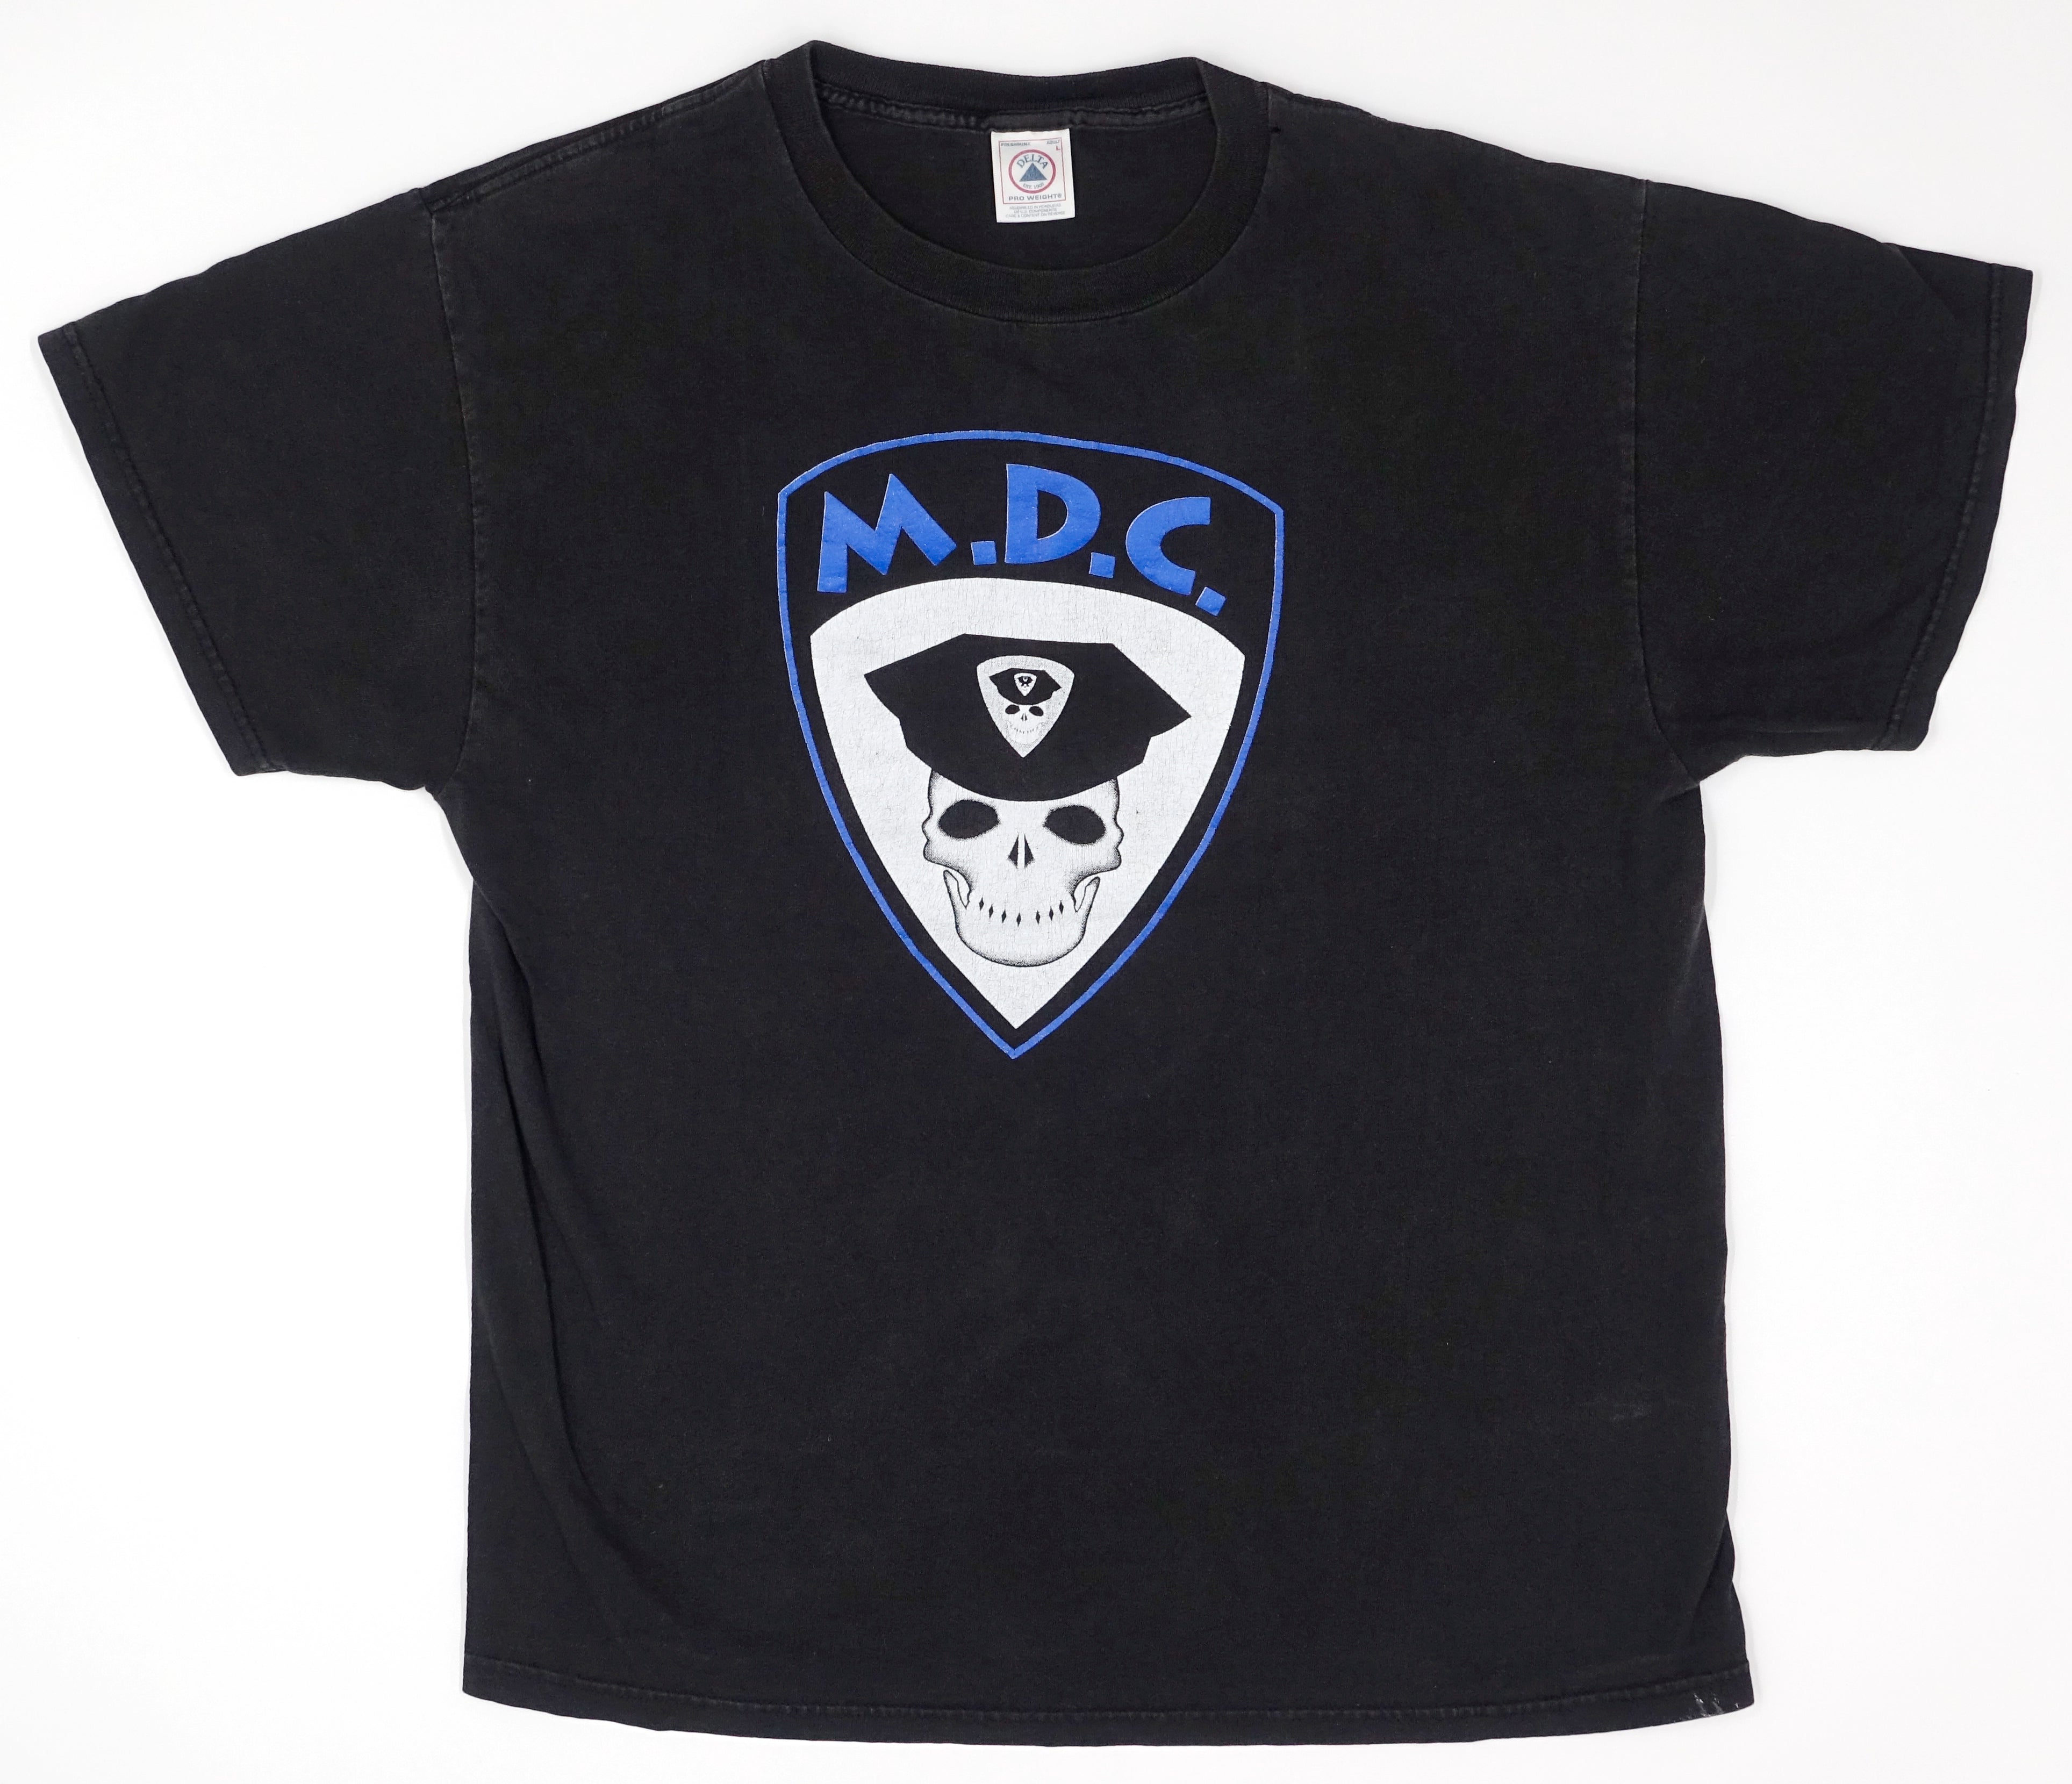 M.D.C. - Millions Of Dead Cops 90's Tour Shirt Size Large